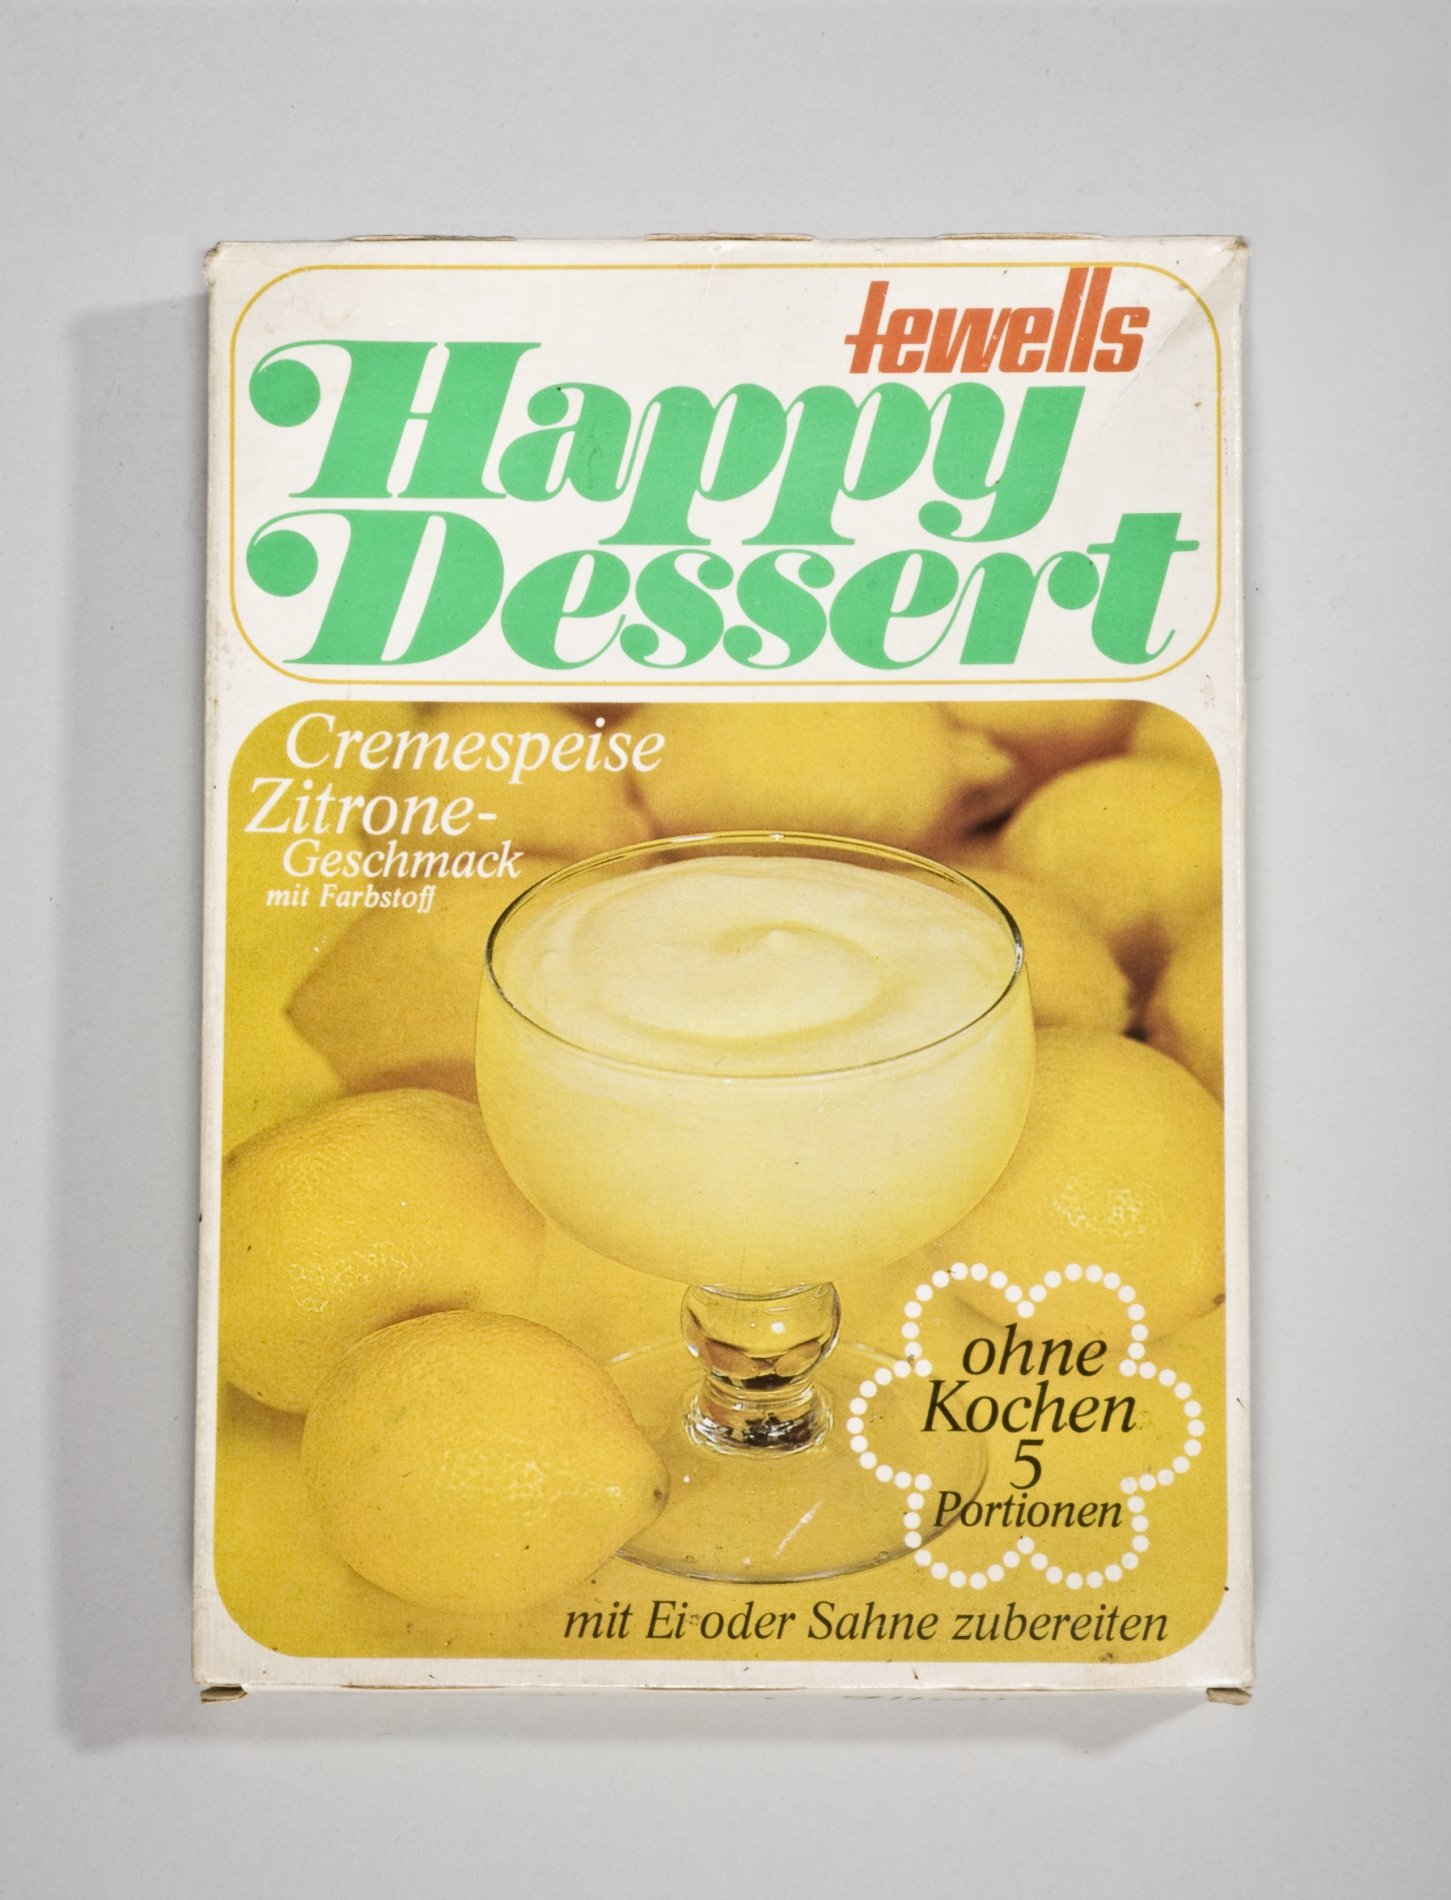 Verpackung "tewells Happy Dessert - Cremespeise Zitrone-Geschmack" (Stiftung Domäne Dahlem - Landgut und Museum, Weiternutzung nur mit Genehmigung des Museums CC BY-NC-SA)